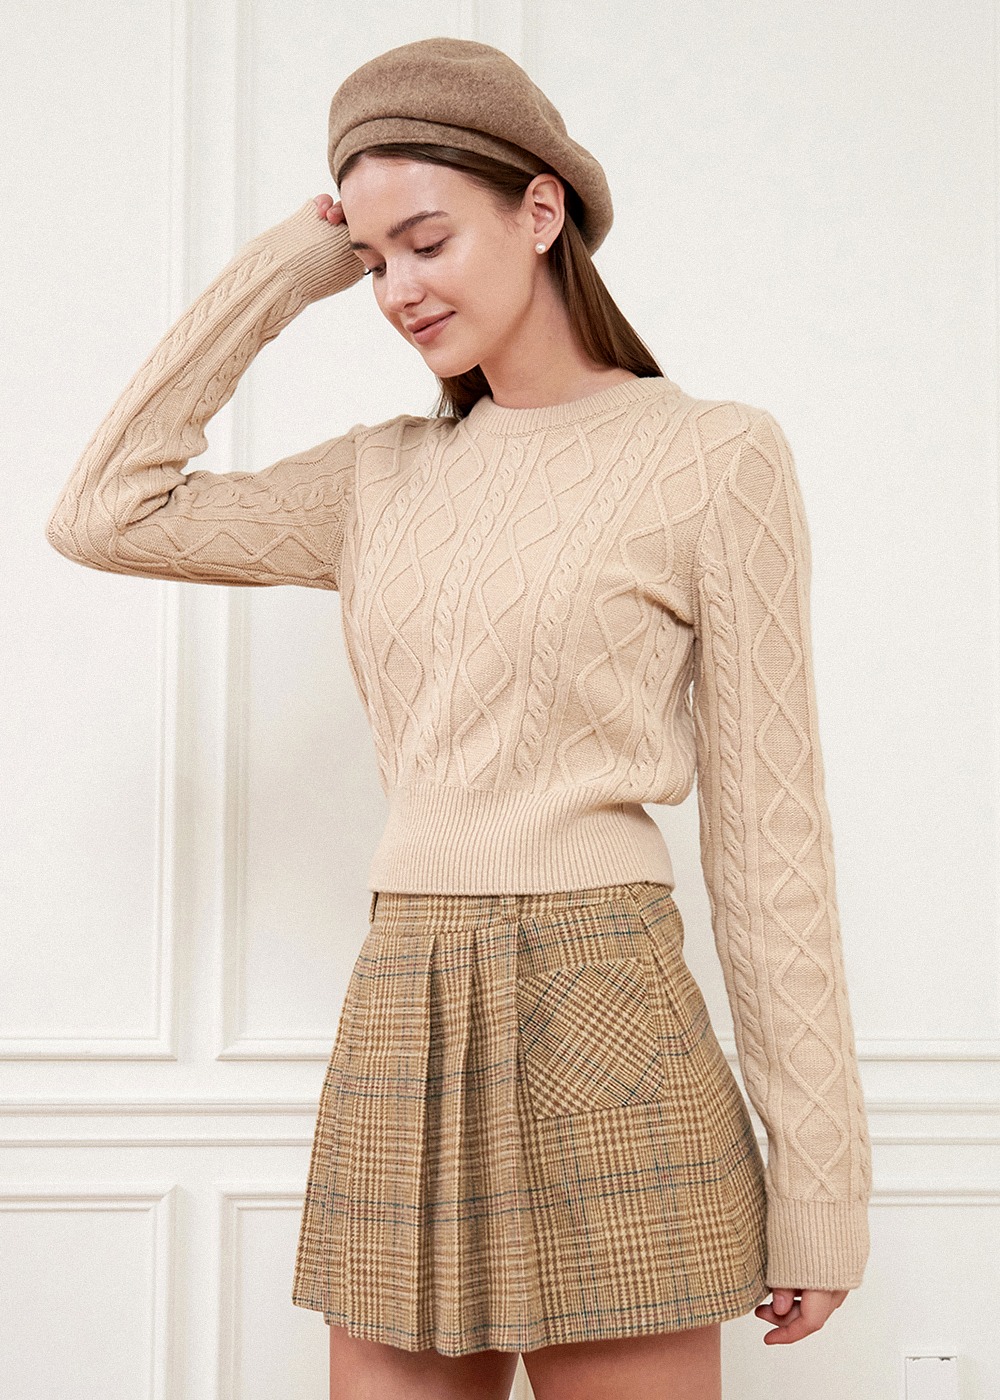 설날70%할인) 시나몬 케이블 울 니트 스웨터 Cinnamon Cable Wool Knit Sweater-Beige